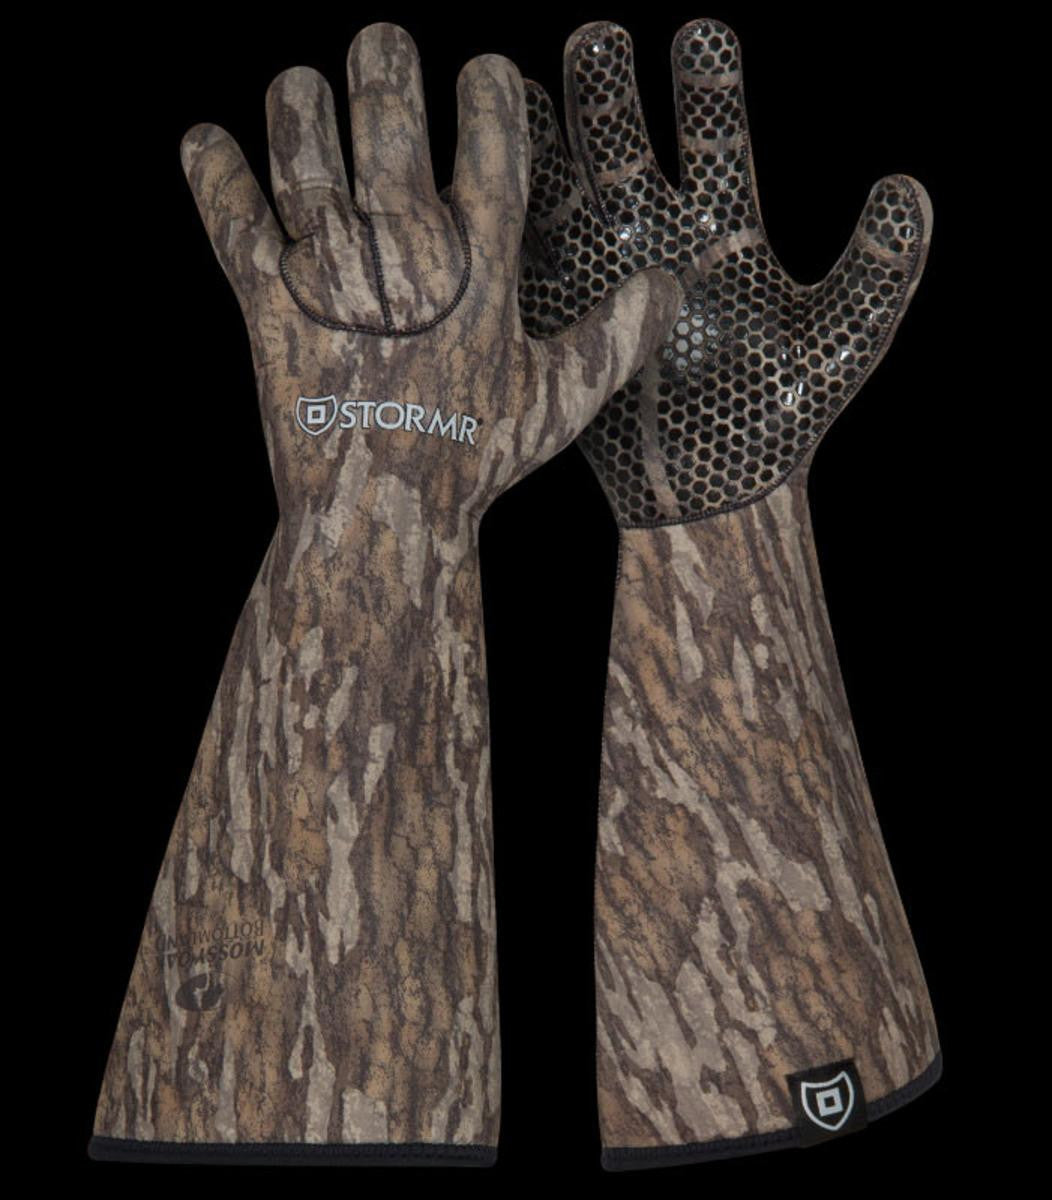 Stormr Stealth Gauntlet Glove - Mossy Oak Bottomland